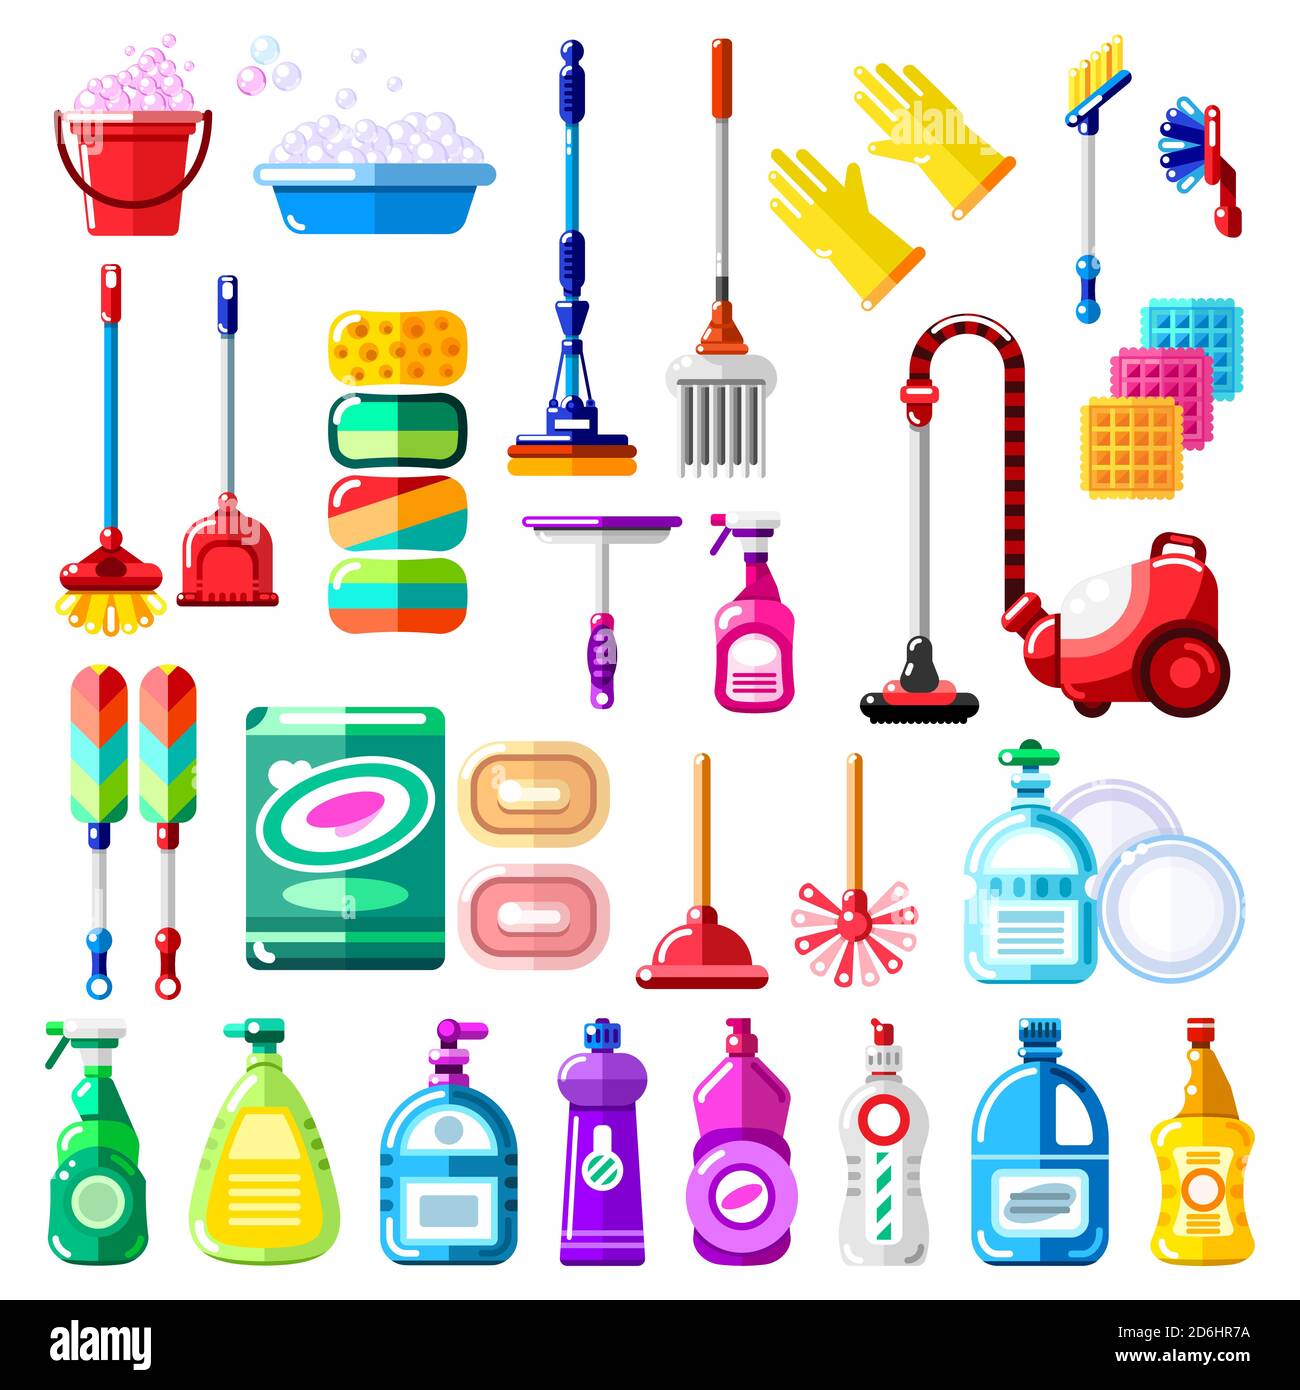 Outils de nettoyage, détergent et fournitures ménagers. Illustration  vectorielle d'un balai multicolore, d'un aspirateur, d'une brosse, d'une  éponge, d'un balai. Nettoyage de la maison et de la maison Image  Vectorielle Stock 